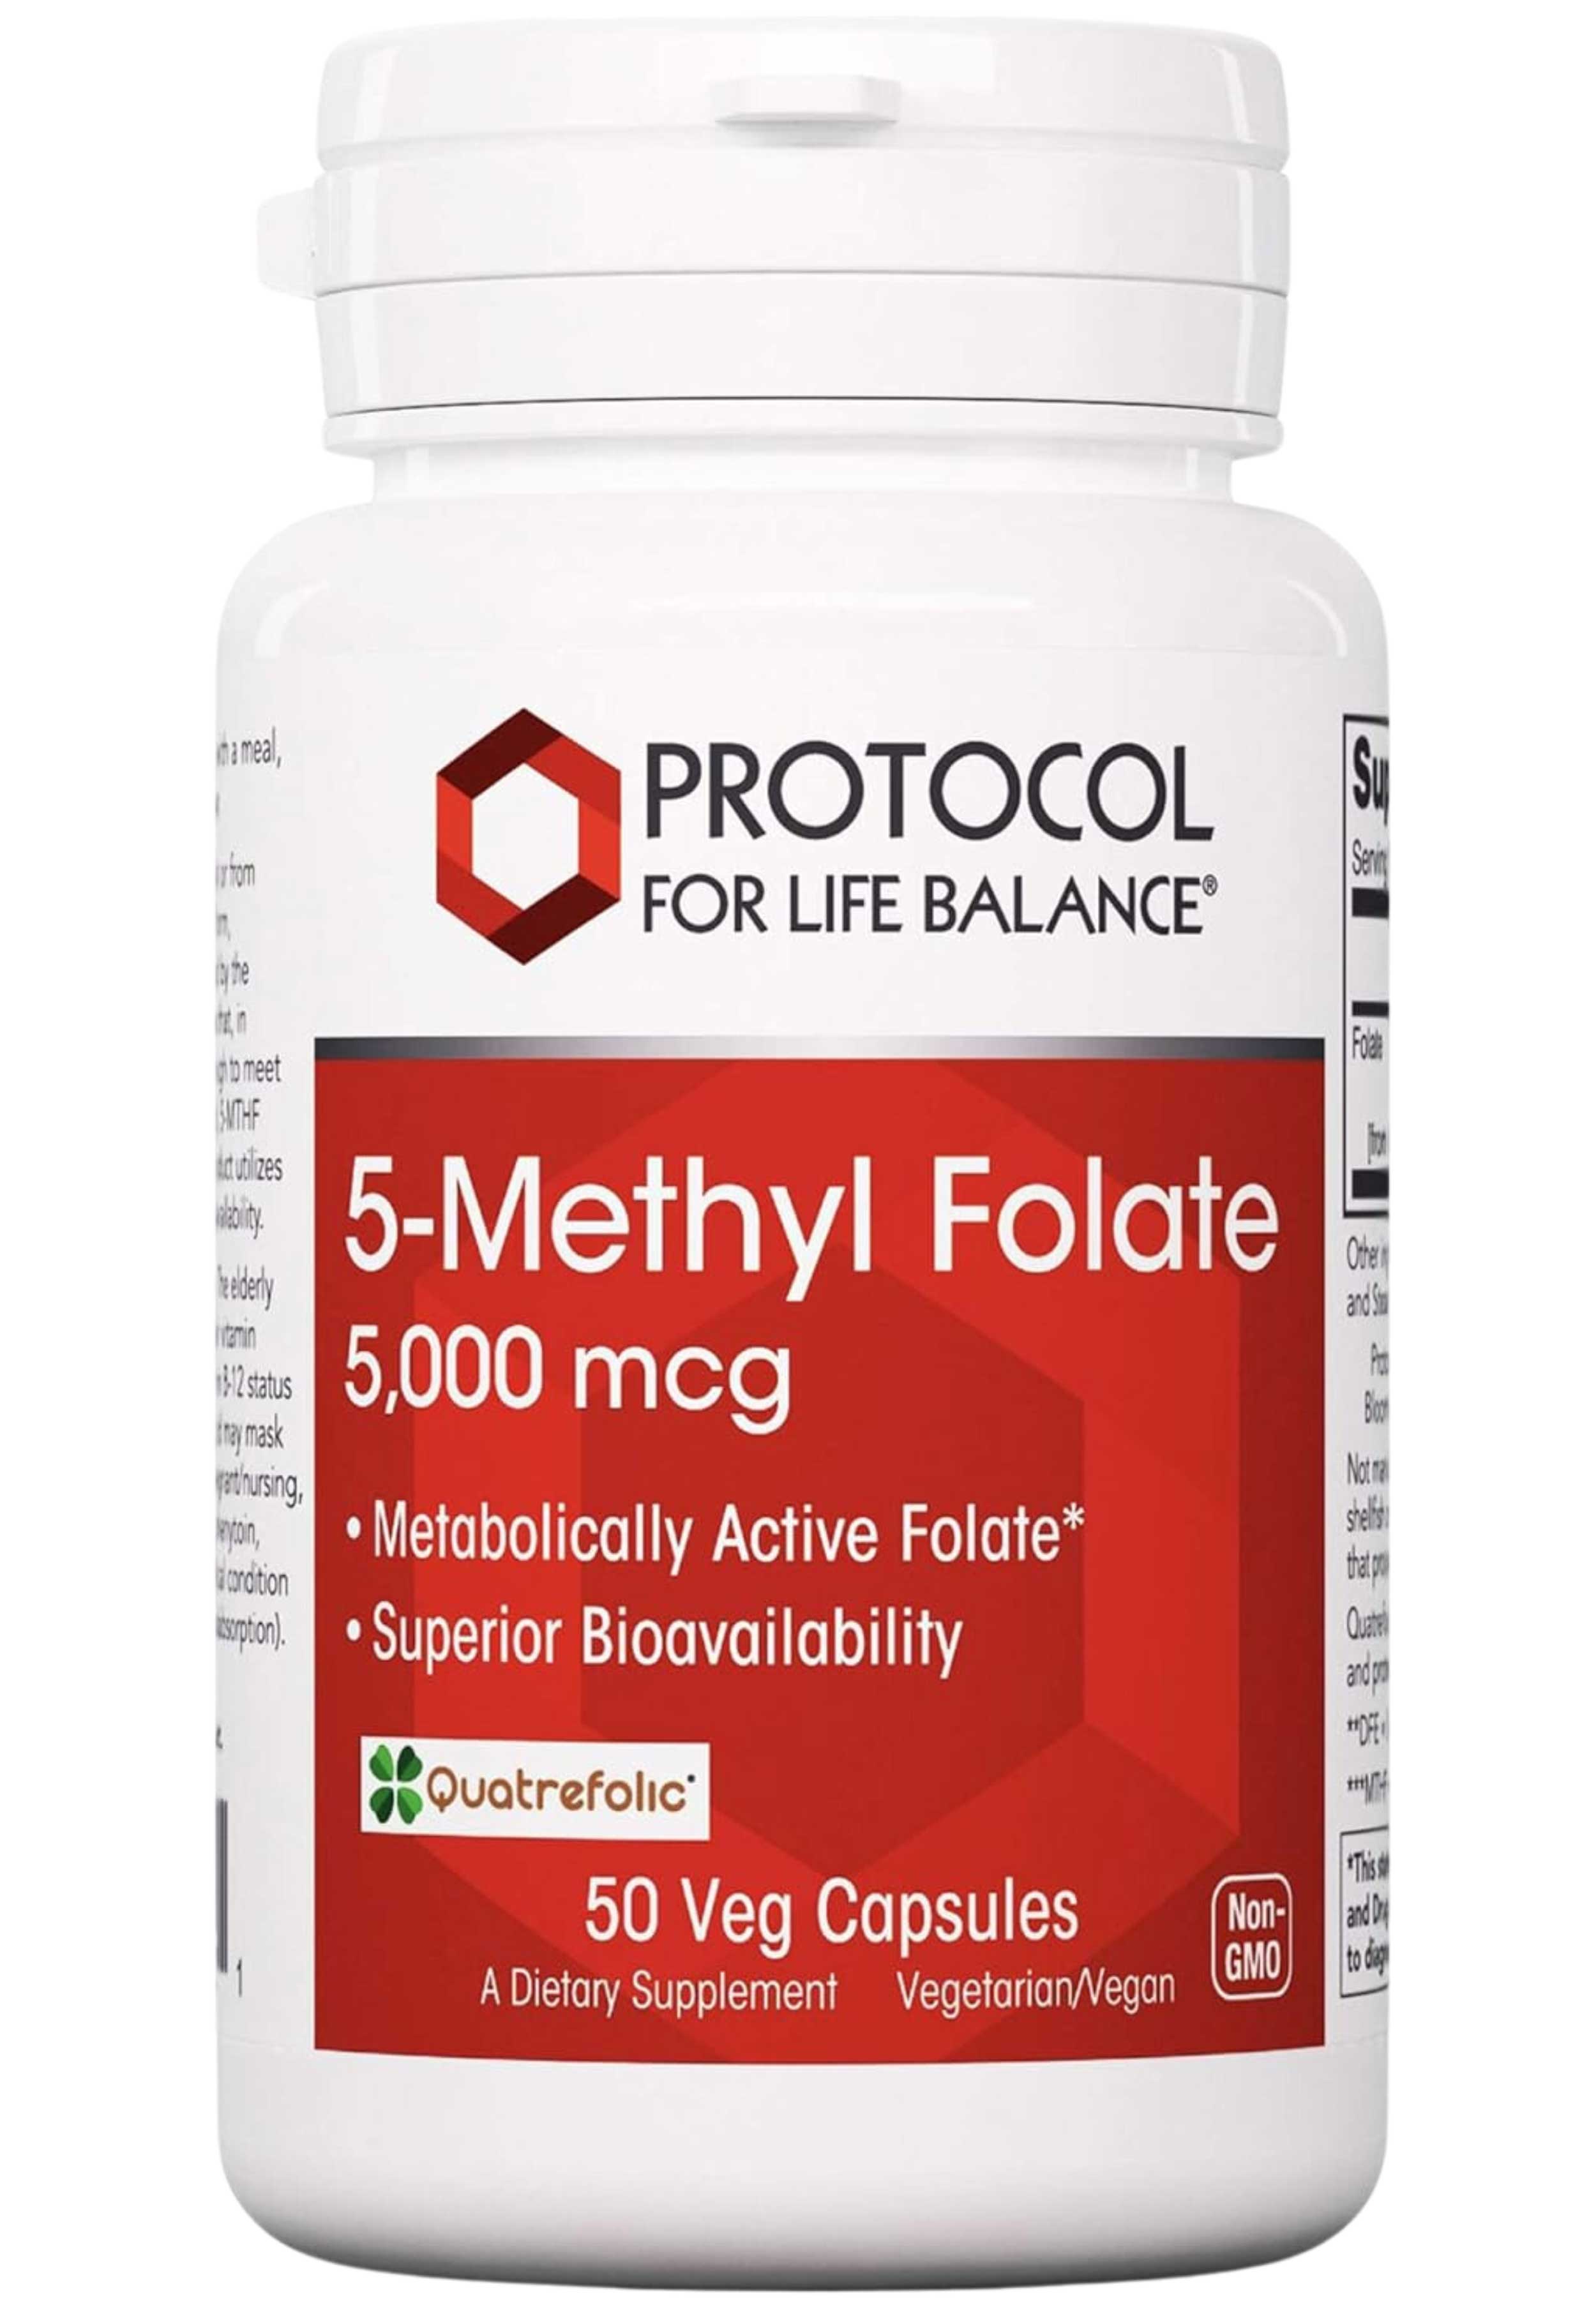 Protocol for Life Balance 5-Methyl Folate 5,000 mcg